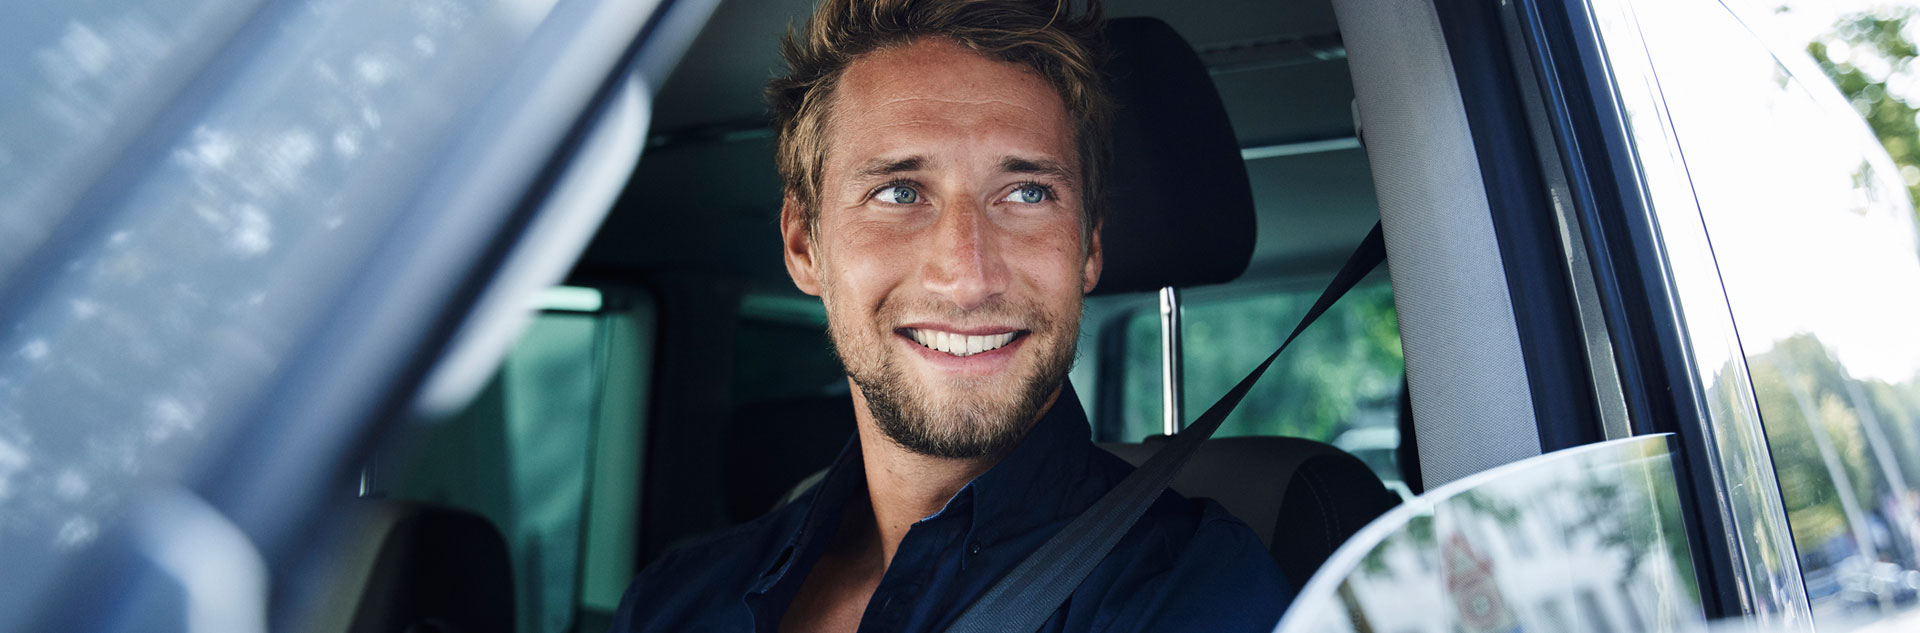 Lächelnder junger Mann in einem Auto